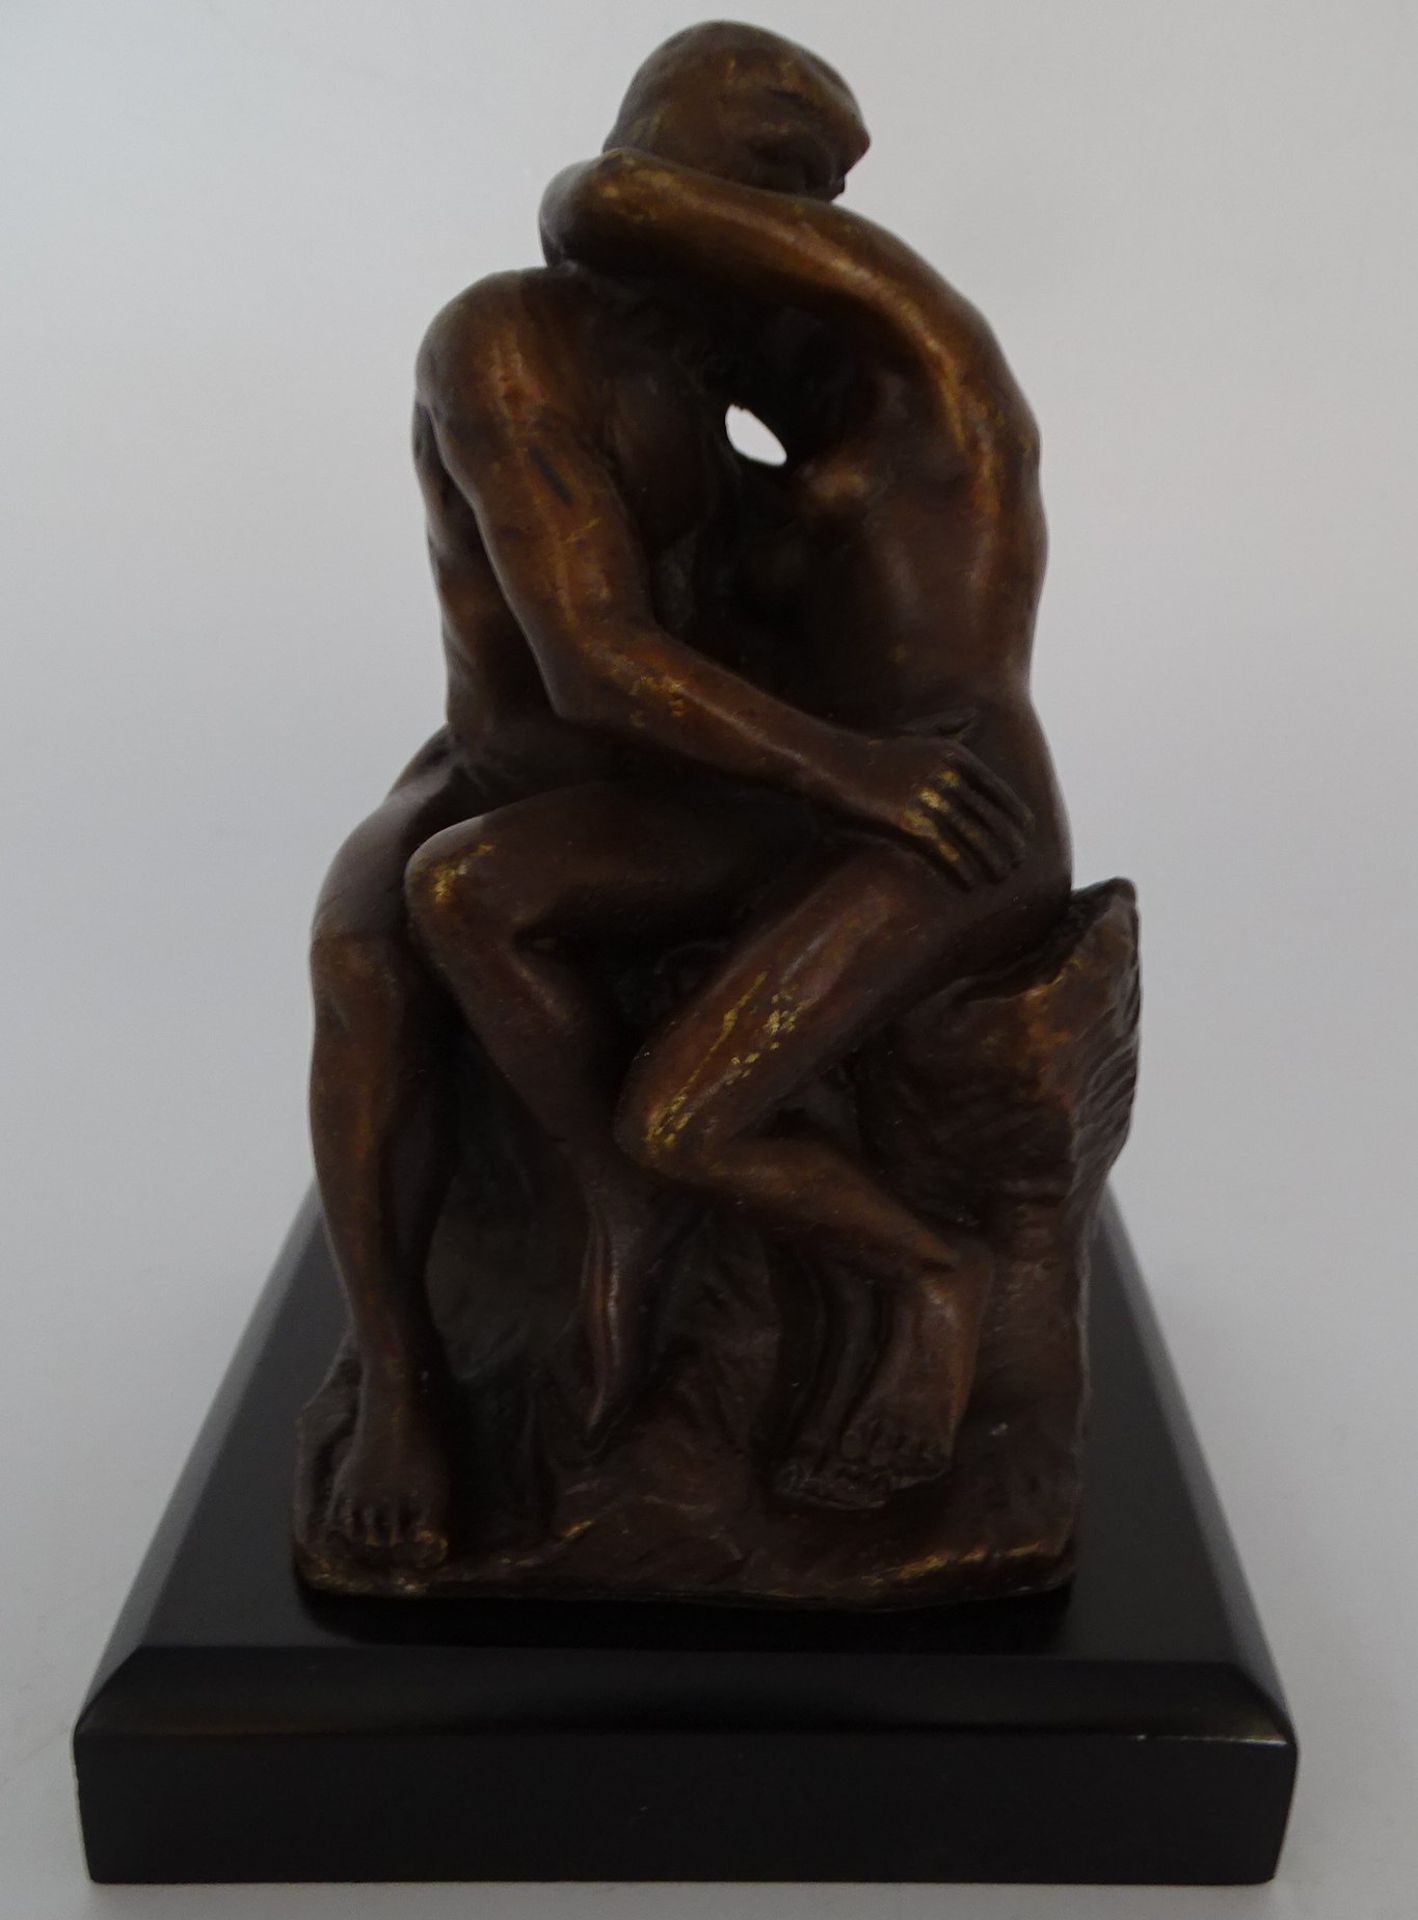 nach Rodin "Der Kuss" kl. Bronze in orig. Kasten, H-11 cm, - Bild 2 aus 6